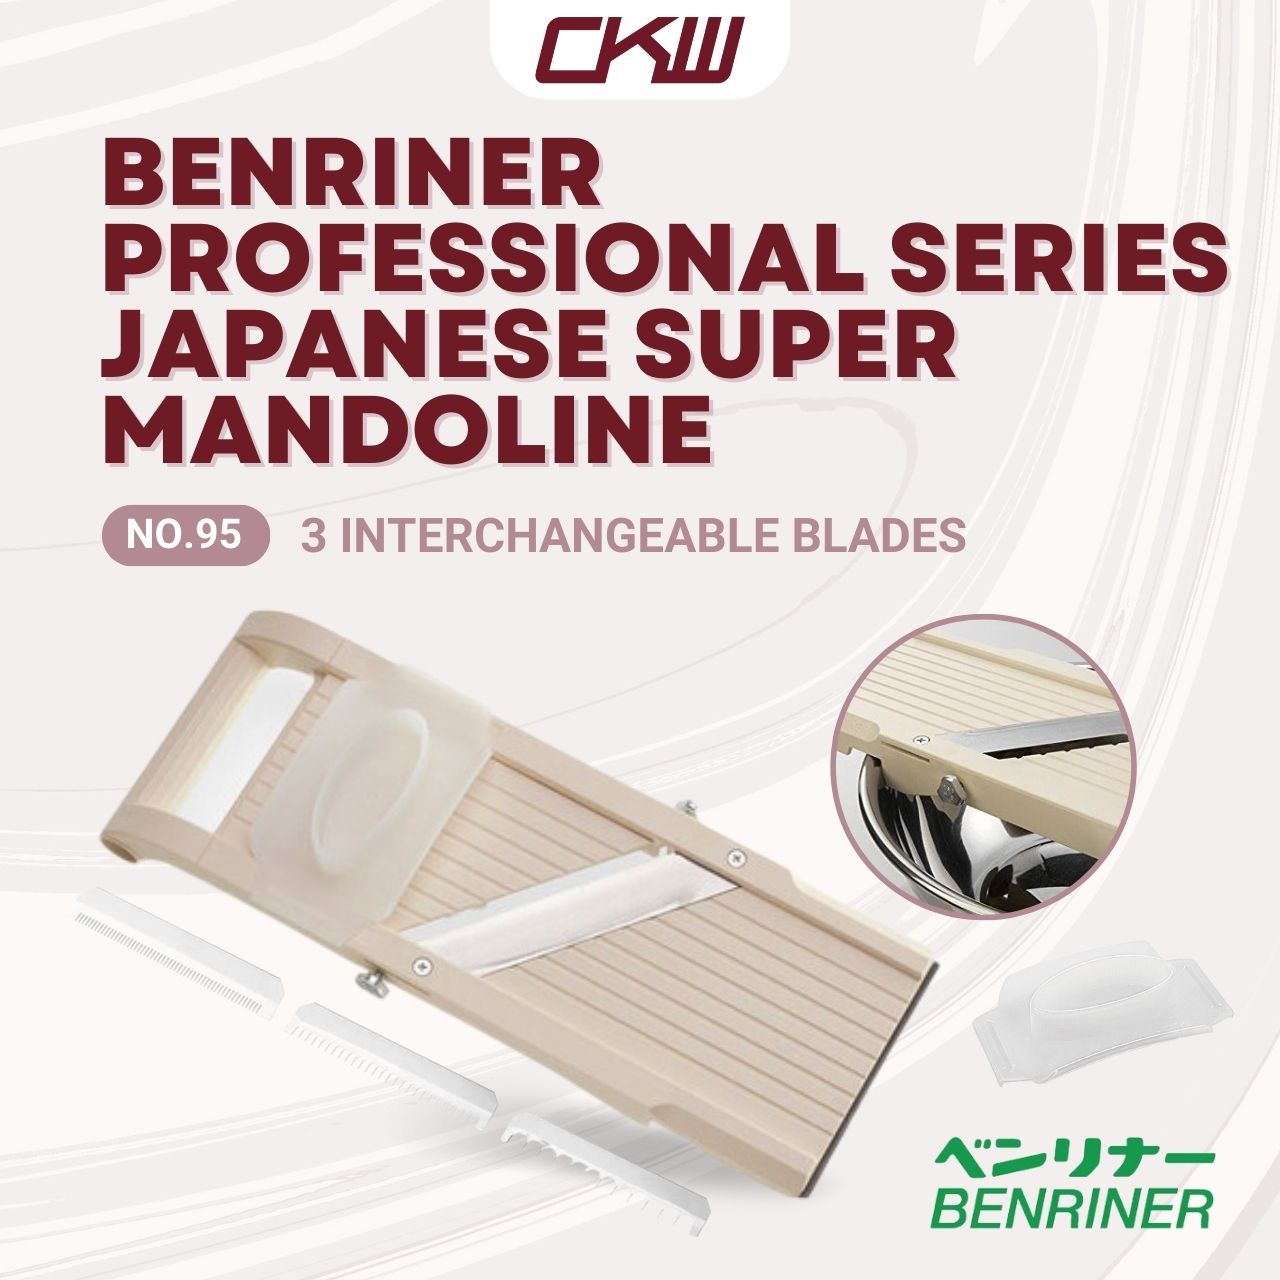 Super Benriner Mandoline Slicer No. 95 Professional Series